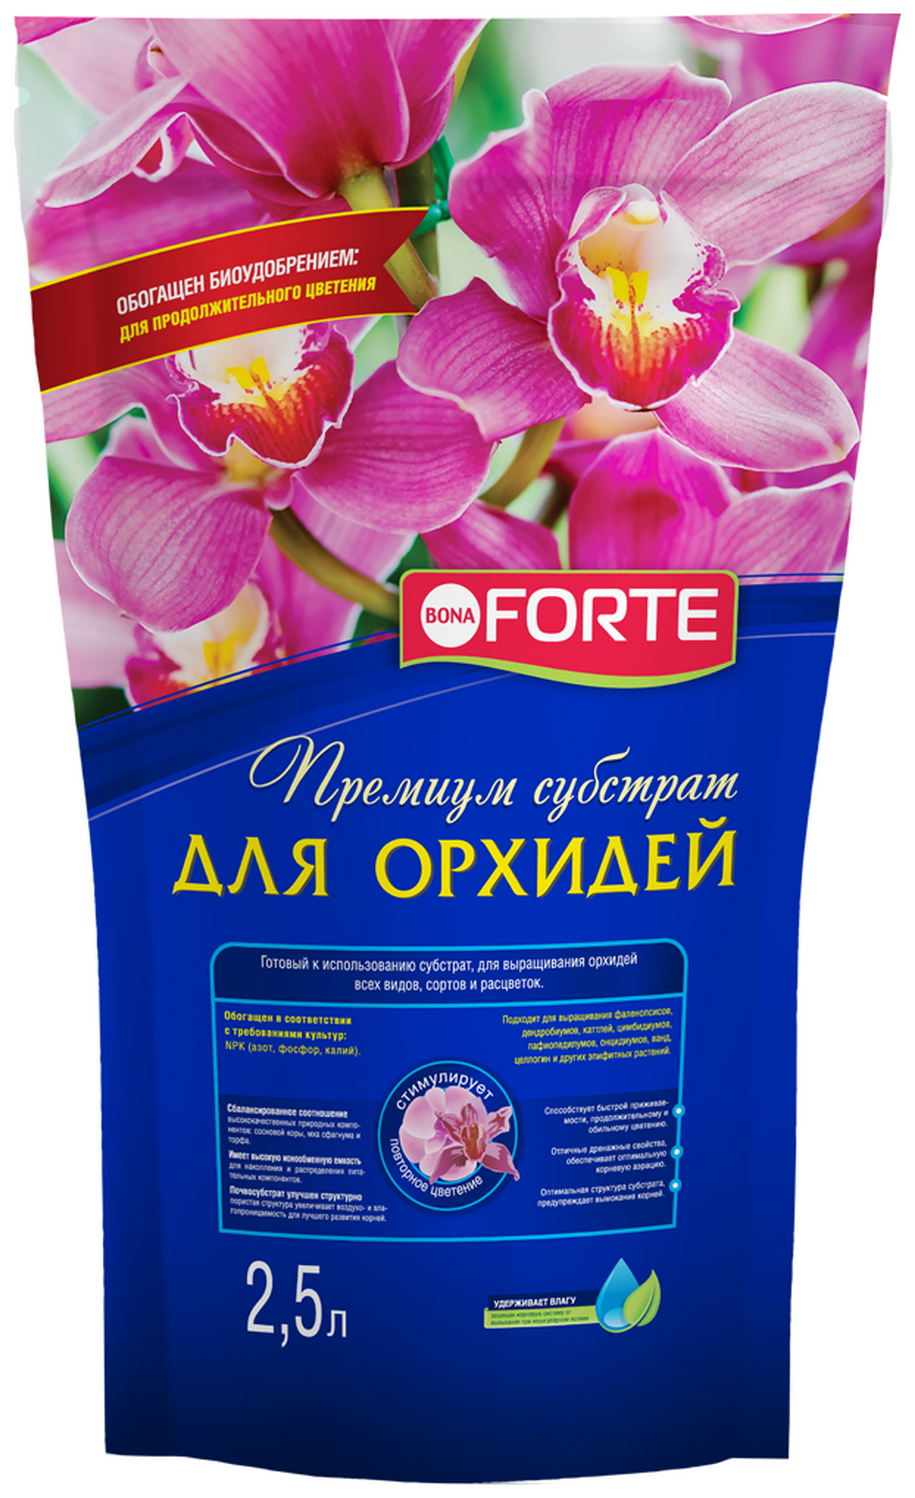 Субстрат BONA FORTE Премиум для орхидей 2.5 л.